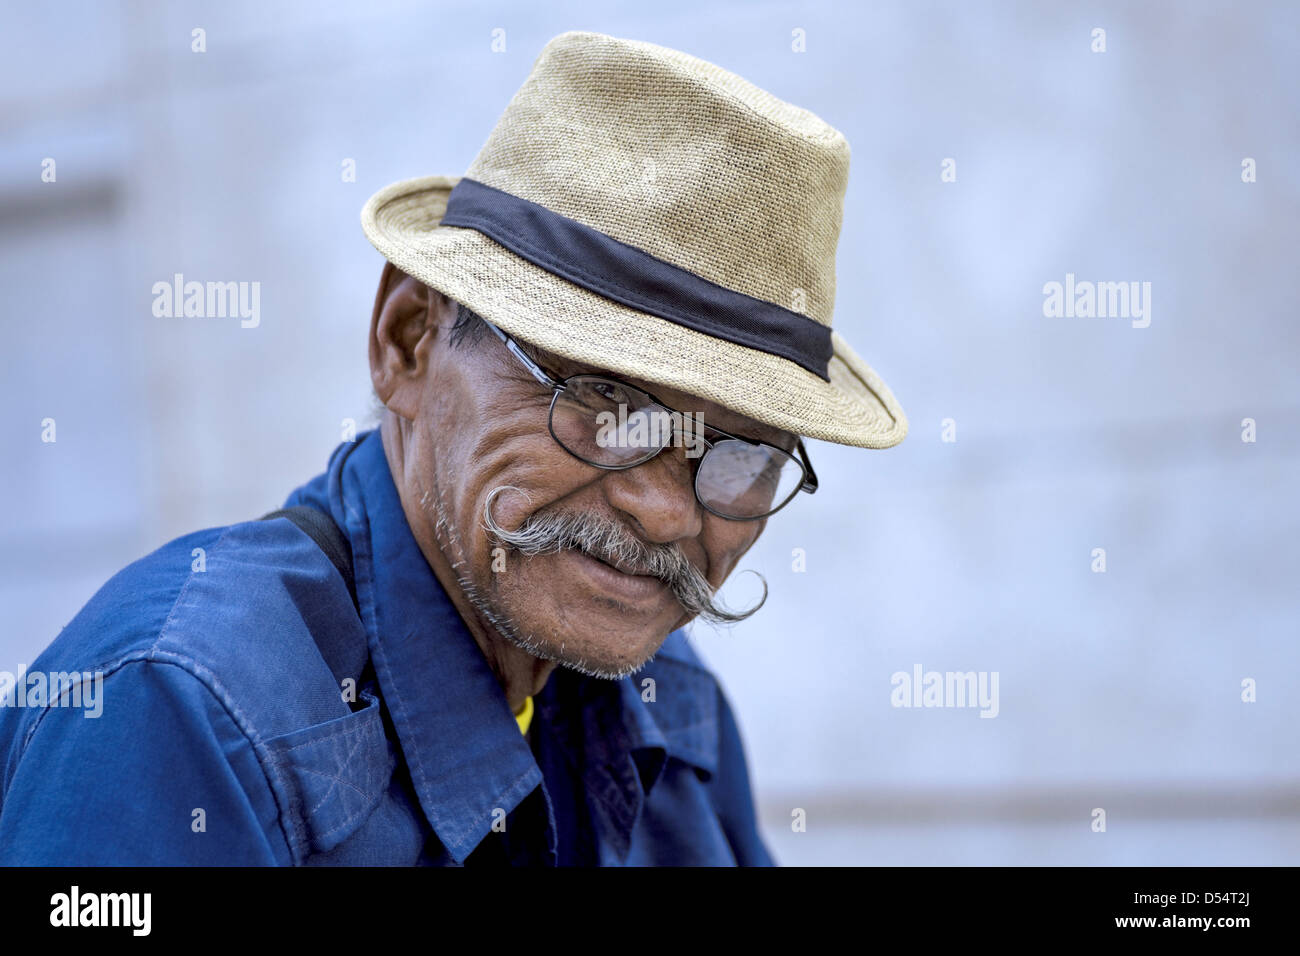 Homme asiatique âgé avec moustache cirée. Thaïlande Asie du Sud-est Banque D'Images